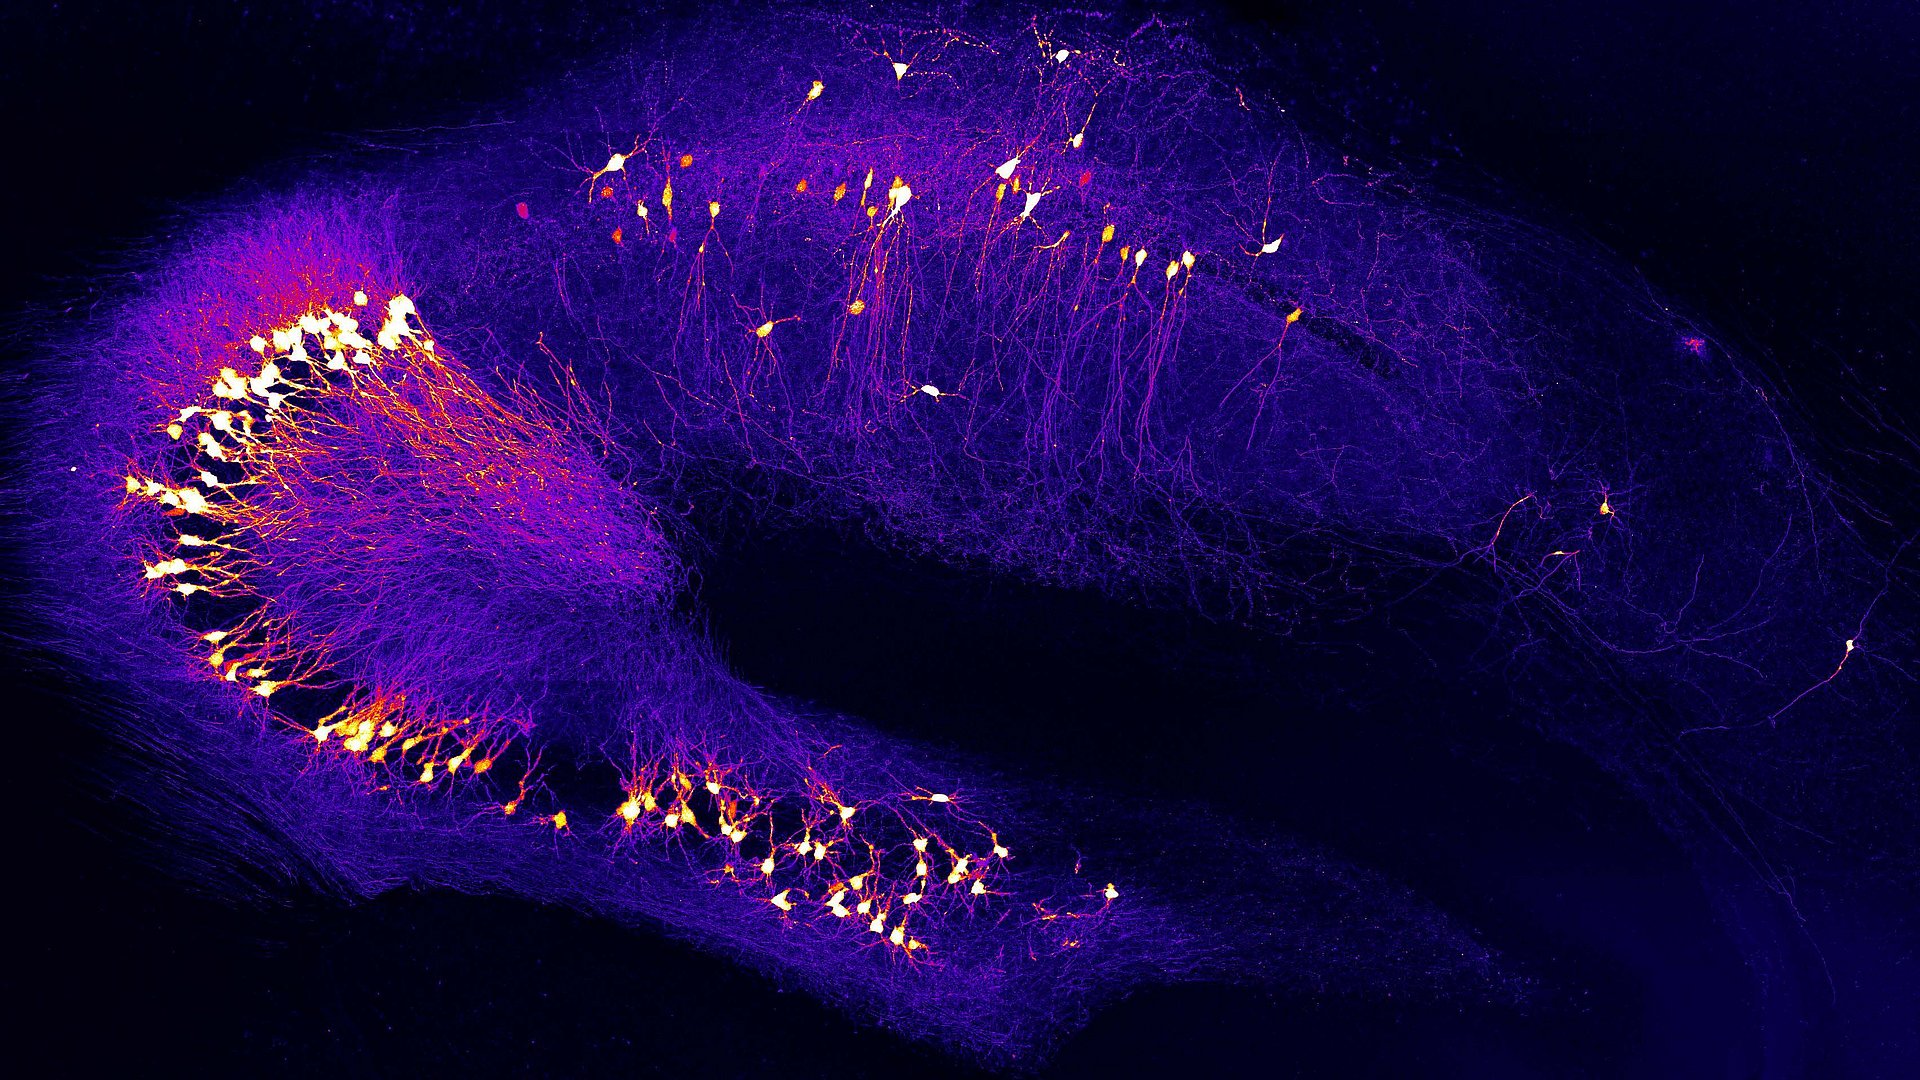 Nervenzellen im Hippocampus, einem Hirngebiet für Lernen und Gedächtnis, das früh von Alzheimer betroffen ist.